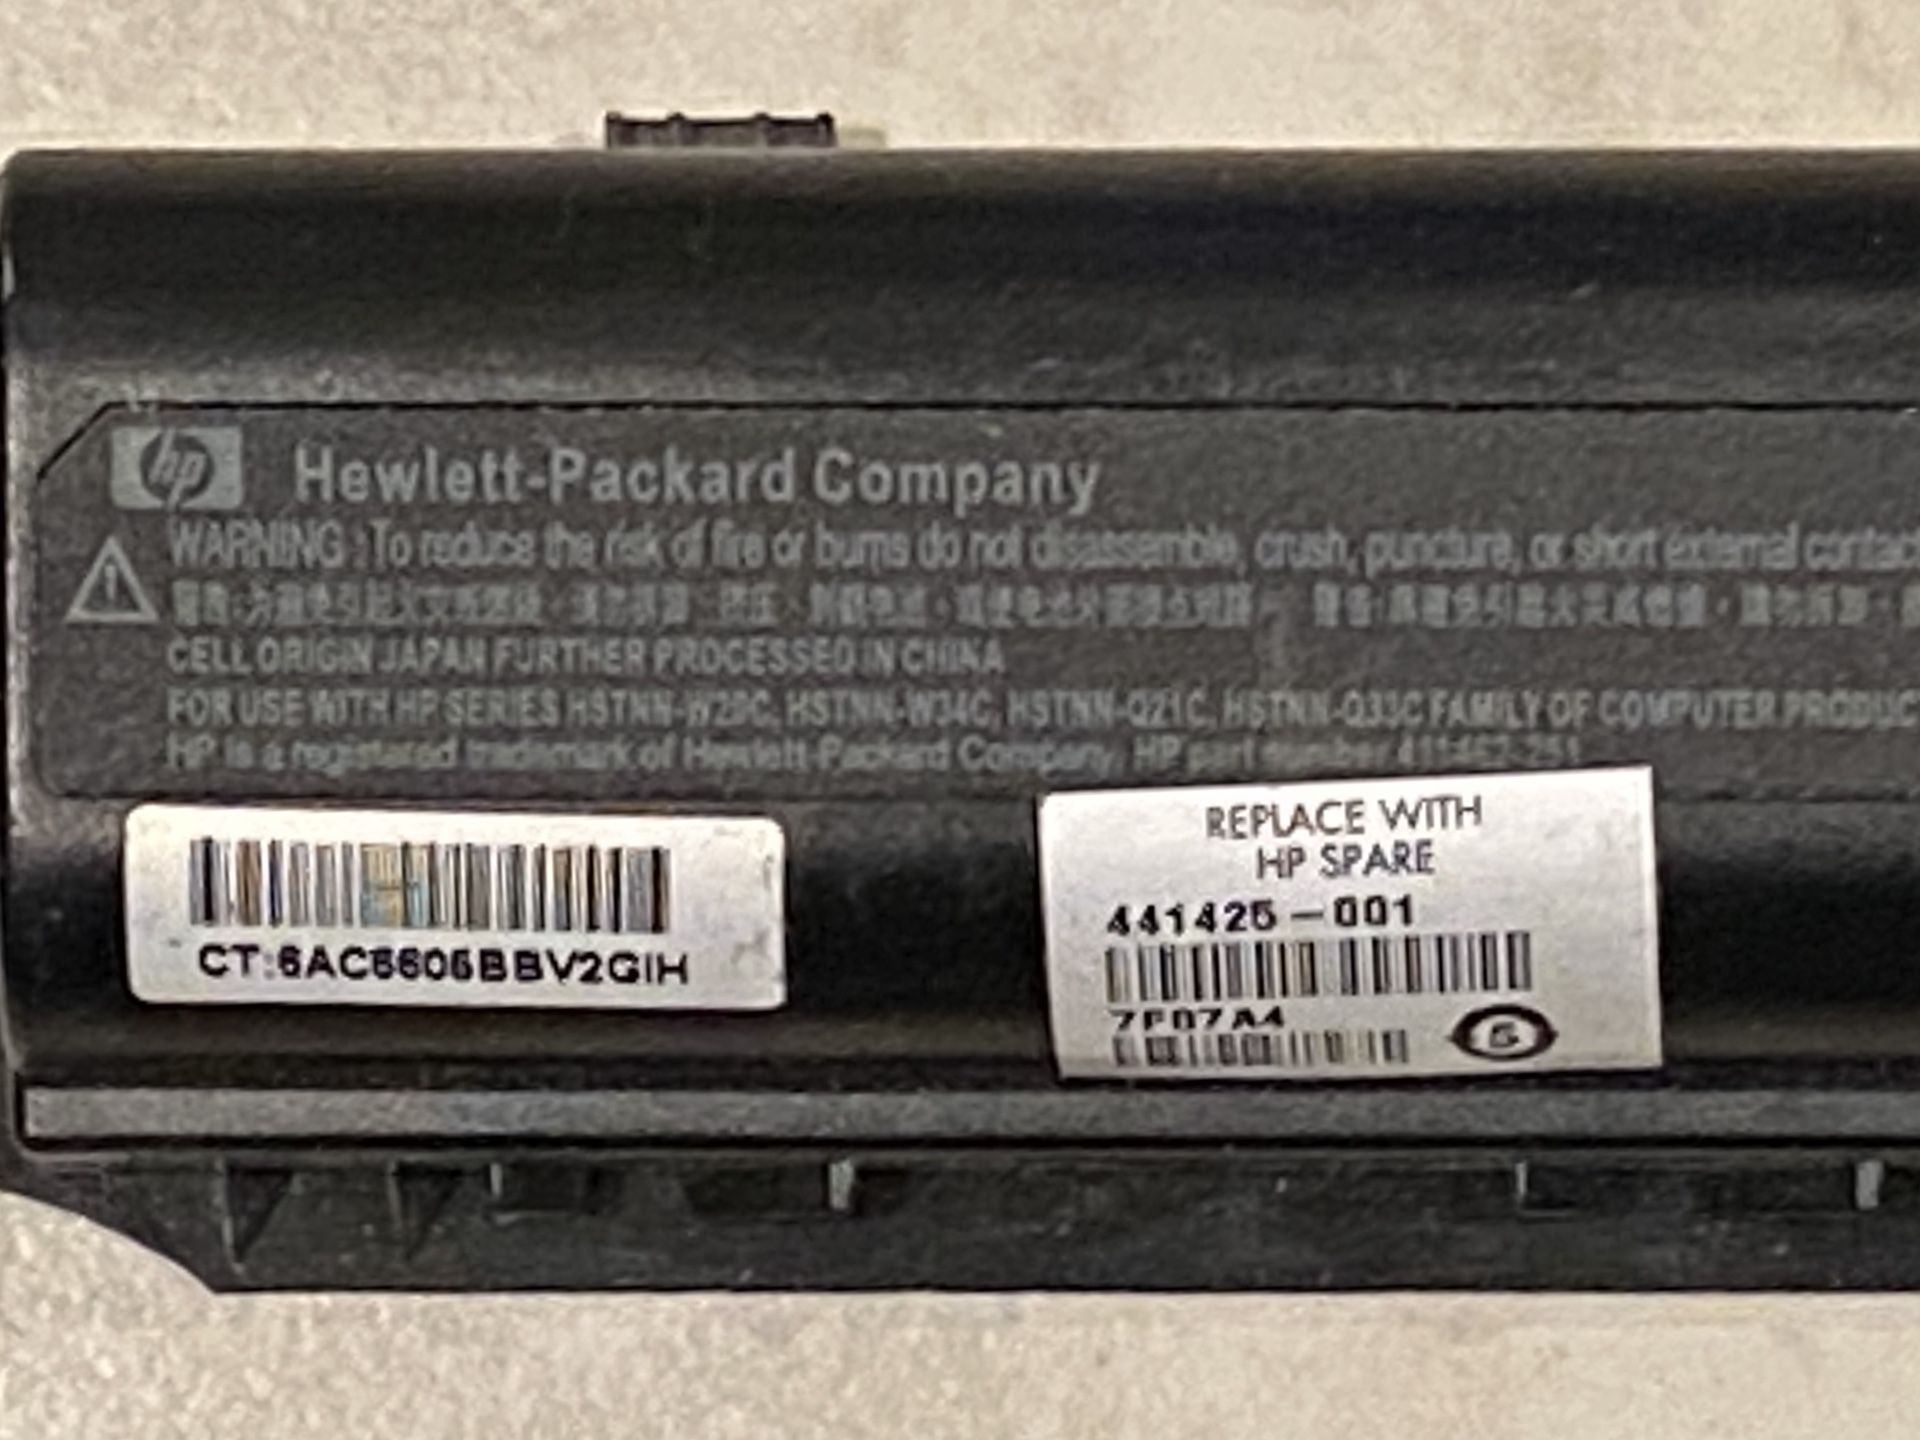 HP Hewlett-Packard - Packard Battery